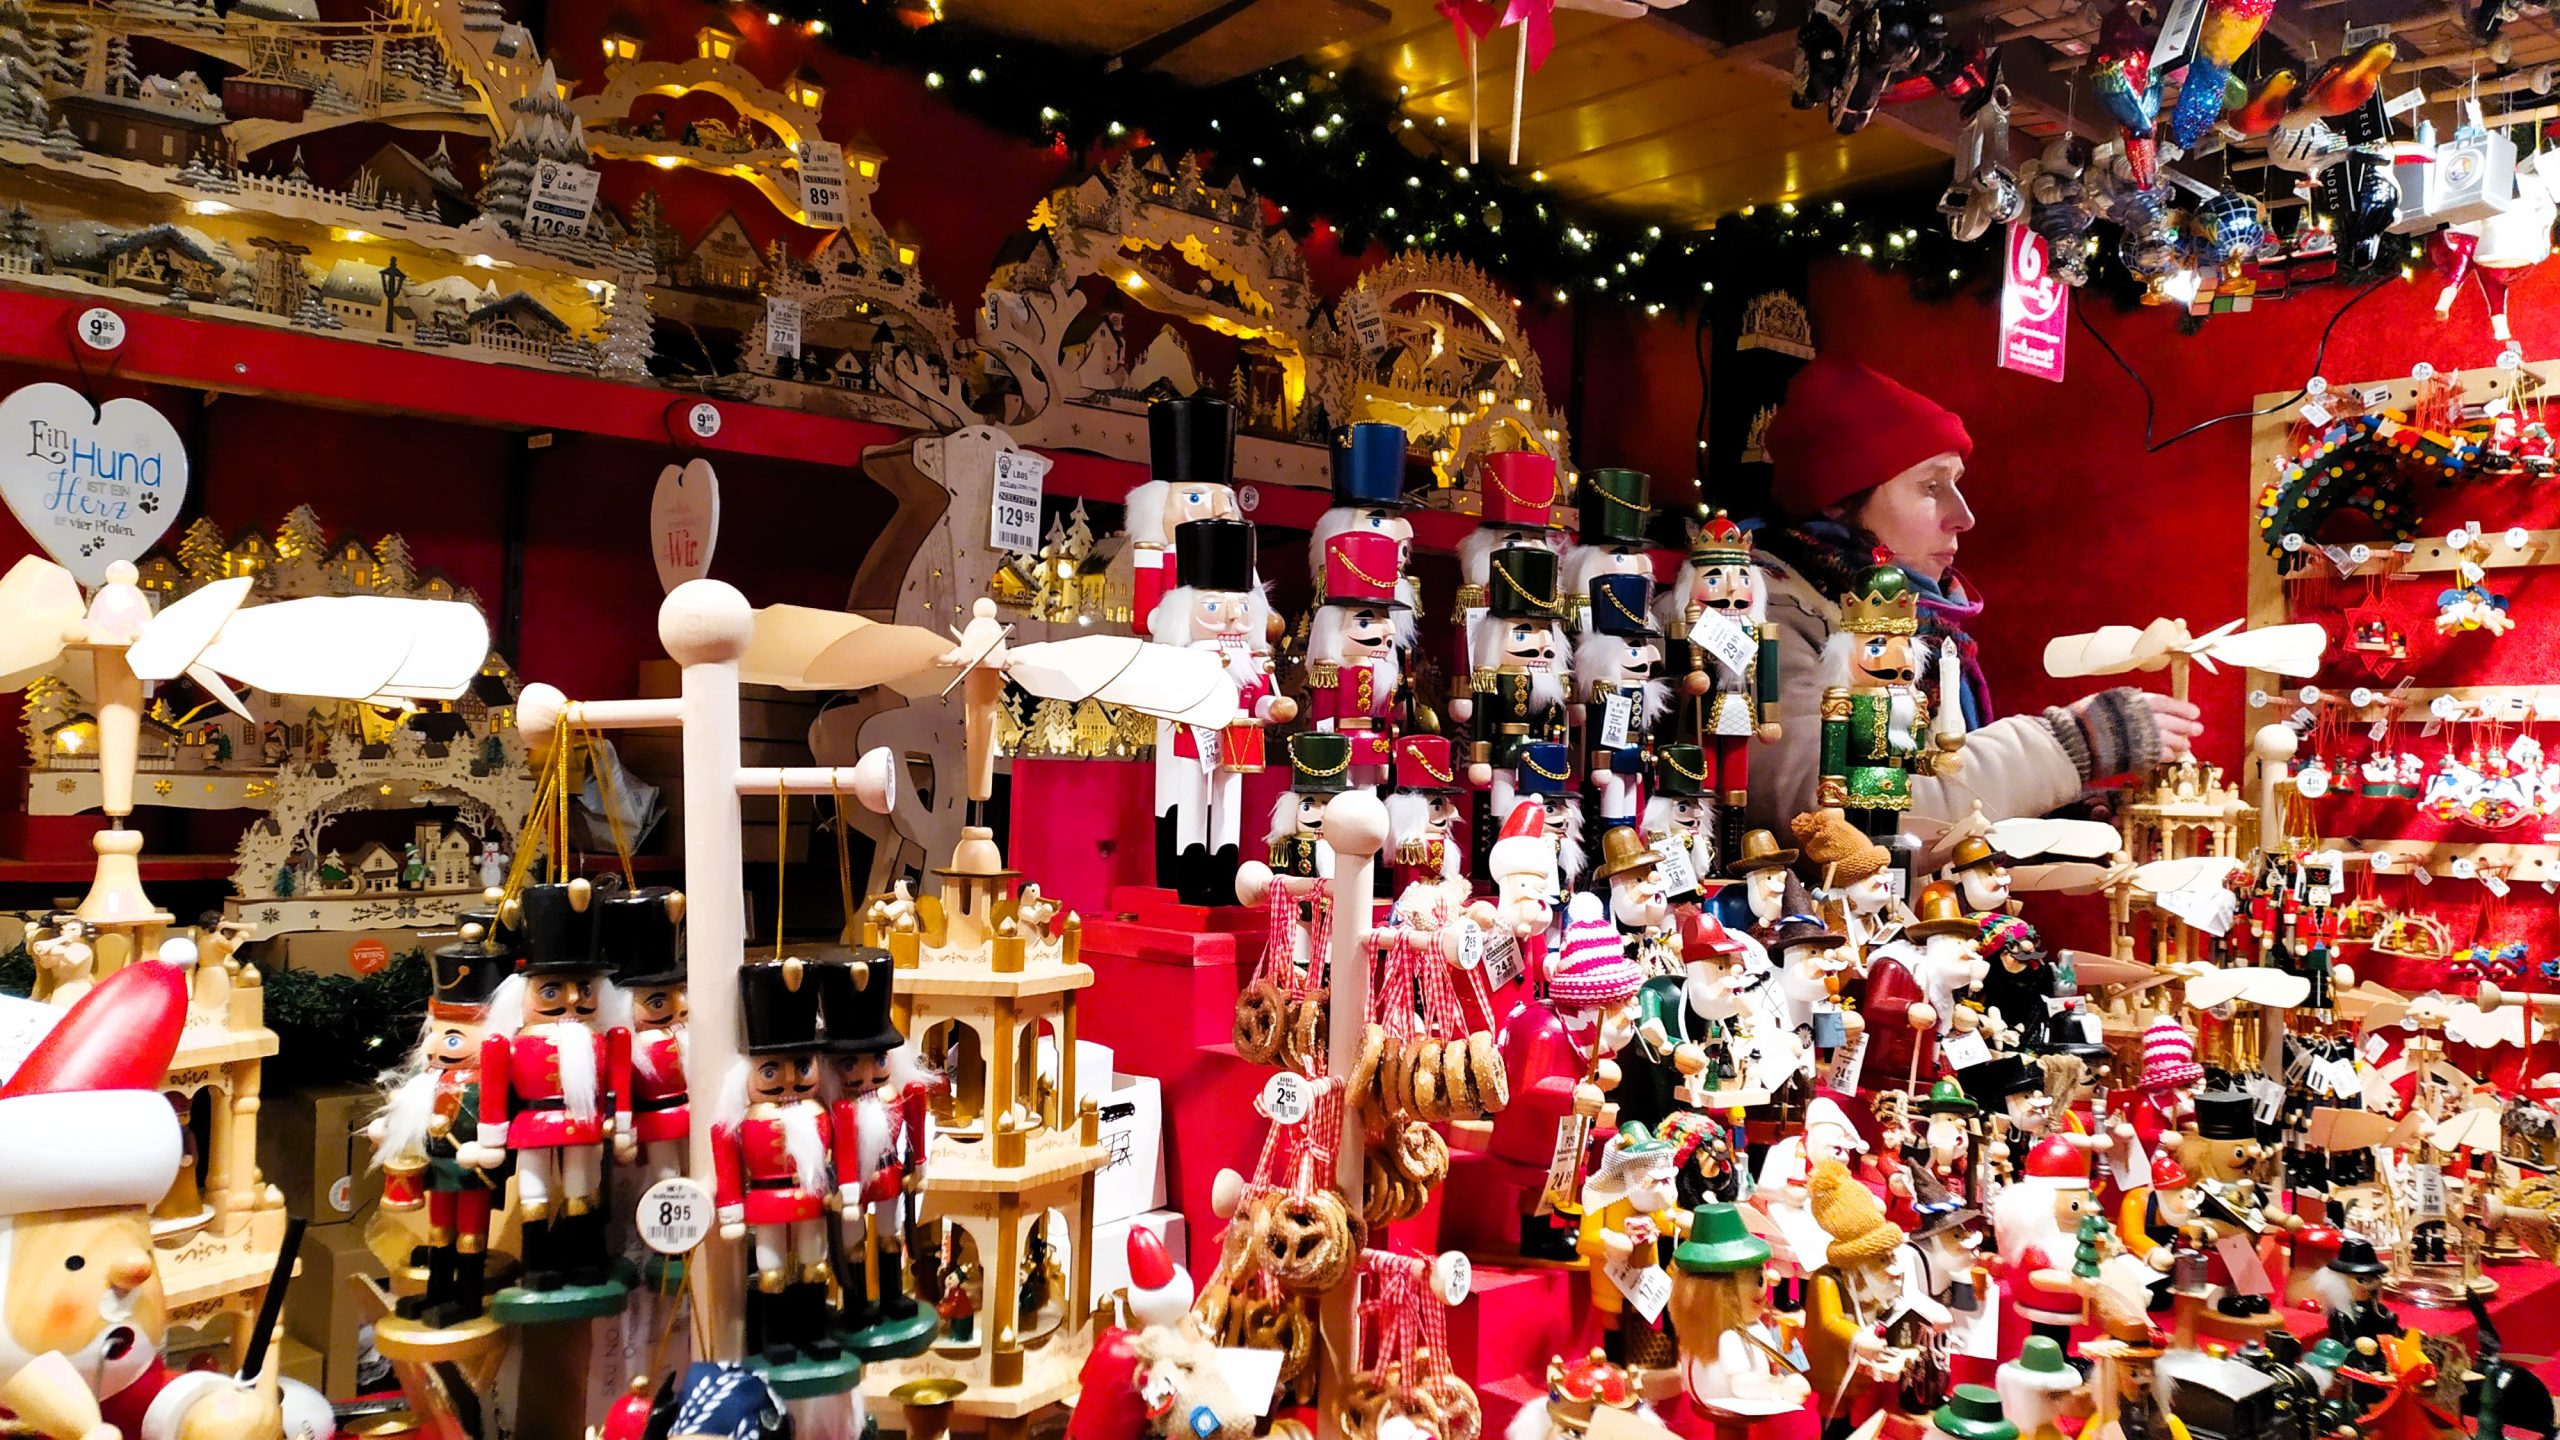 Striezelmarkt-vánoční-trh-Drážďany